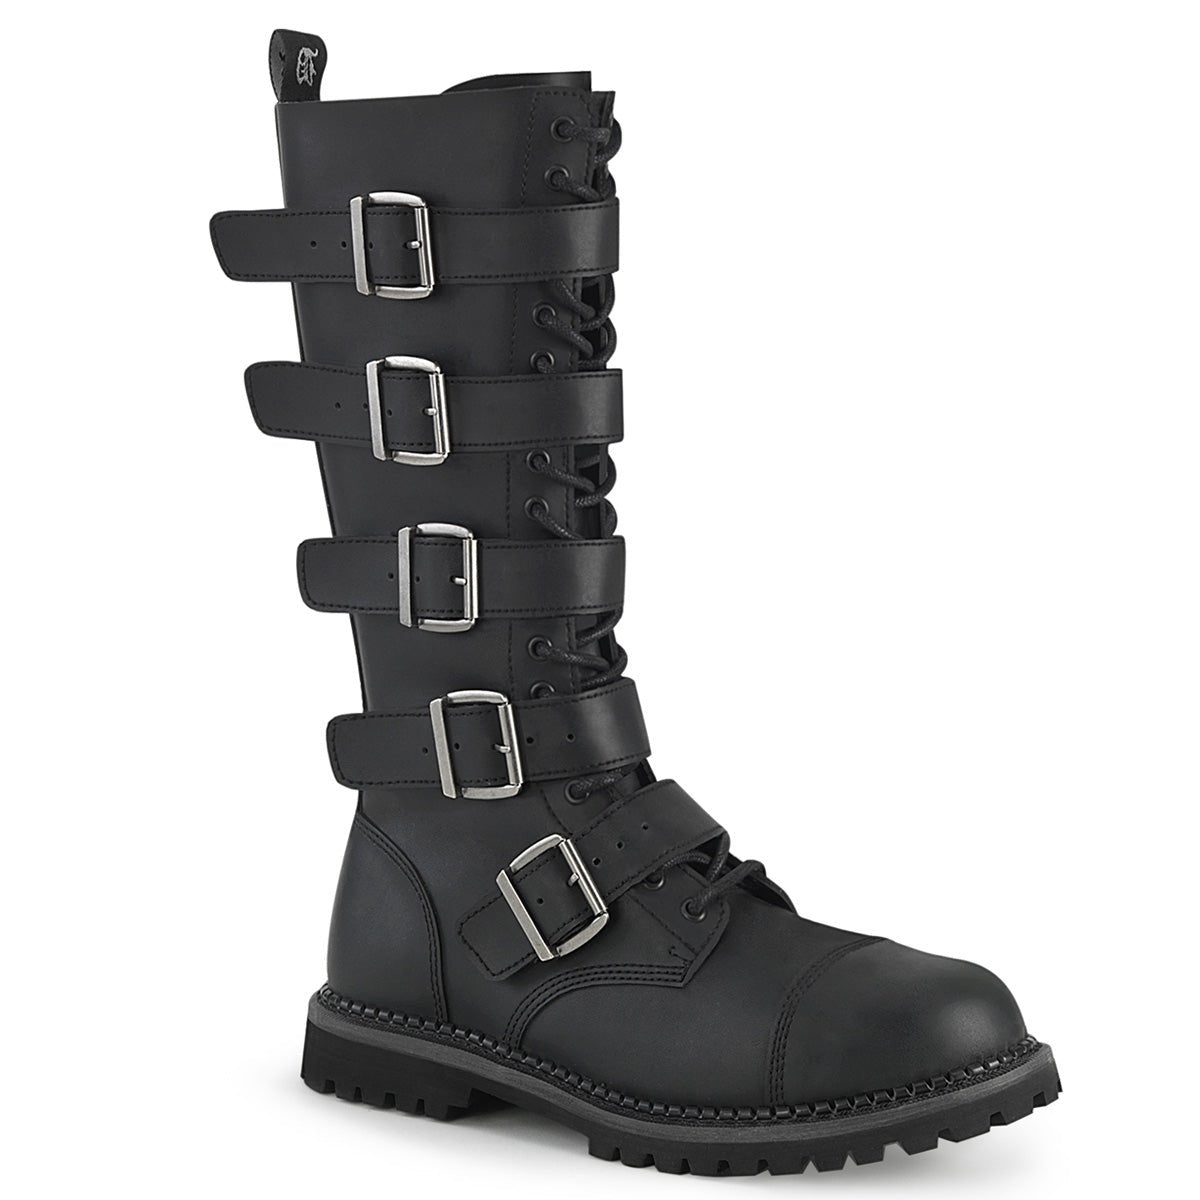 Too Fast | Demonia Riot 18 Bk | Black Vegan Leather Unisex Combat Boots